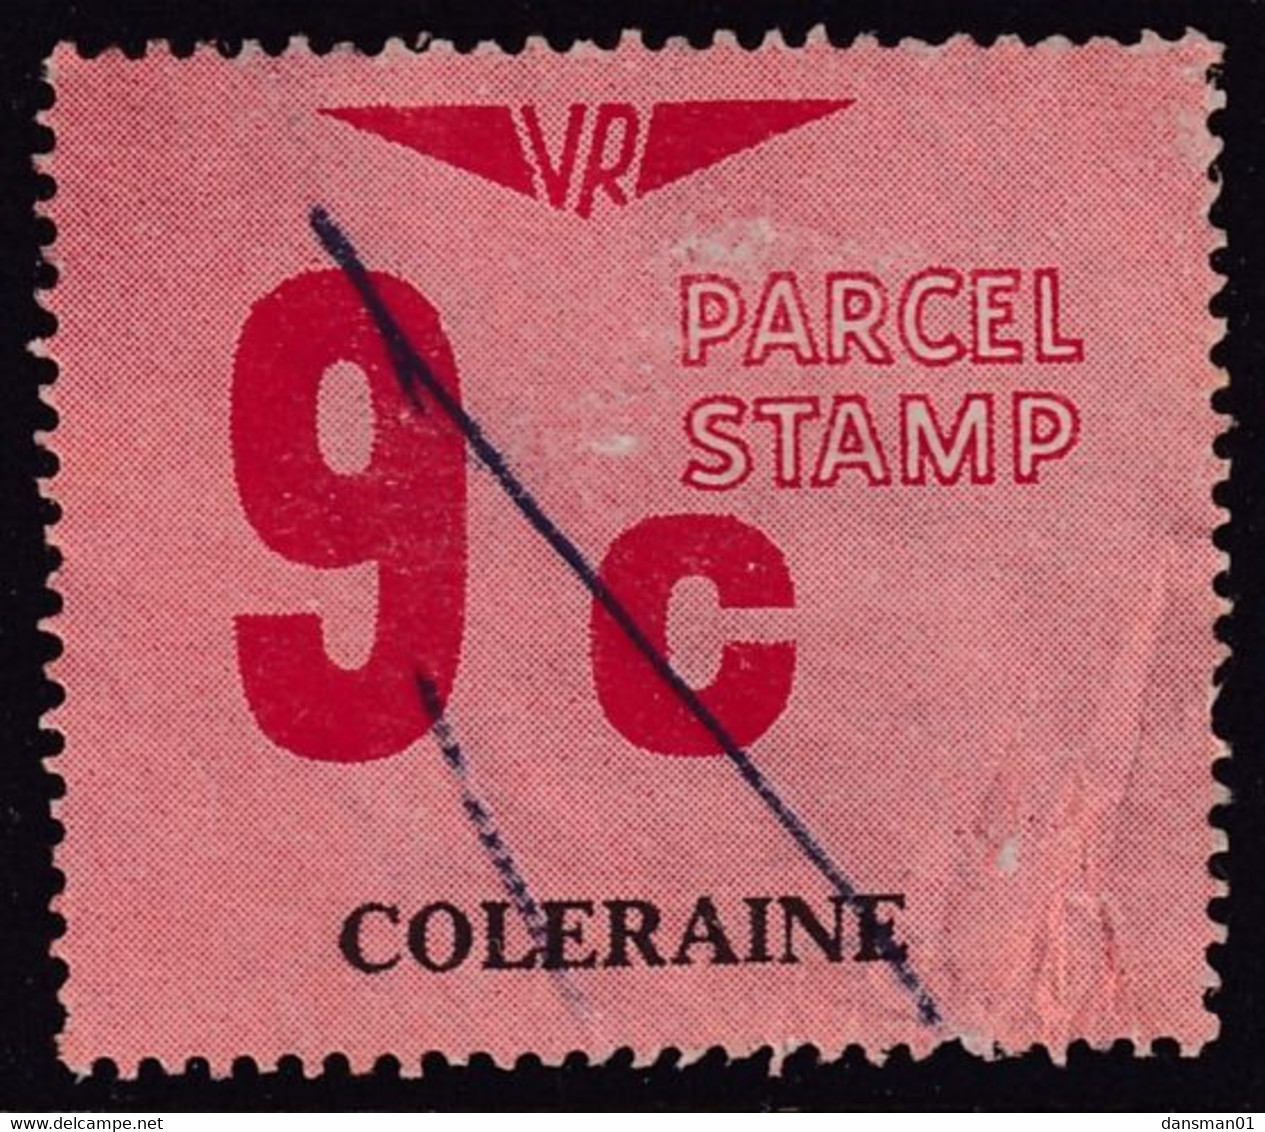 Victoria 1966 Railway Parcel Stamp 9c COLERAINE Used - Abarten Und Kuriositäten